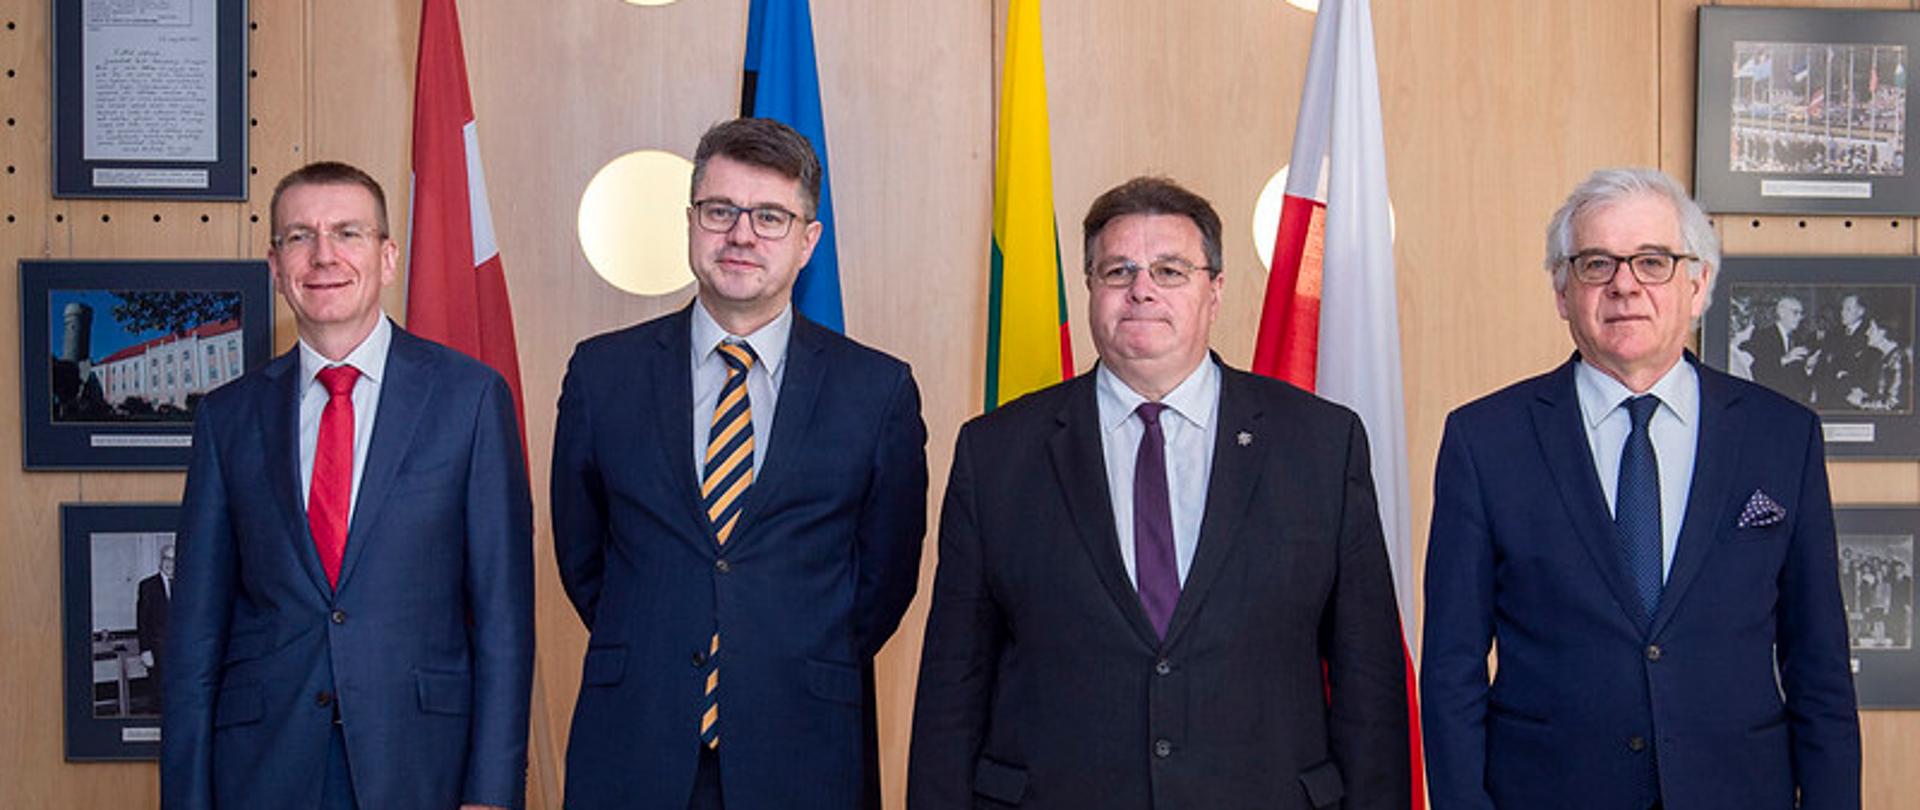 Spotkanie ministrów sz Polski, Litwy, Łotwy i Estonii w Tallinnie 2 czerwca